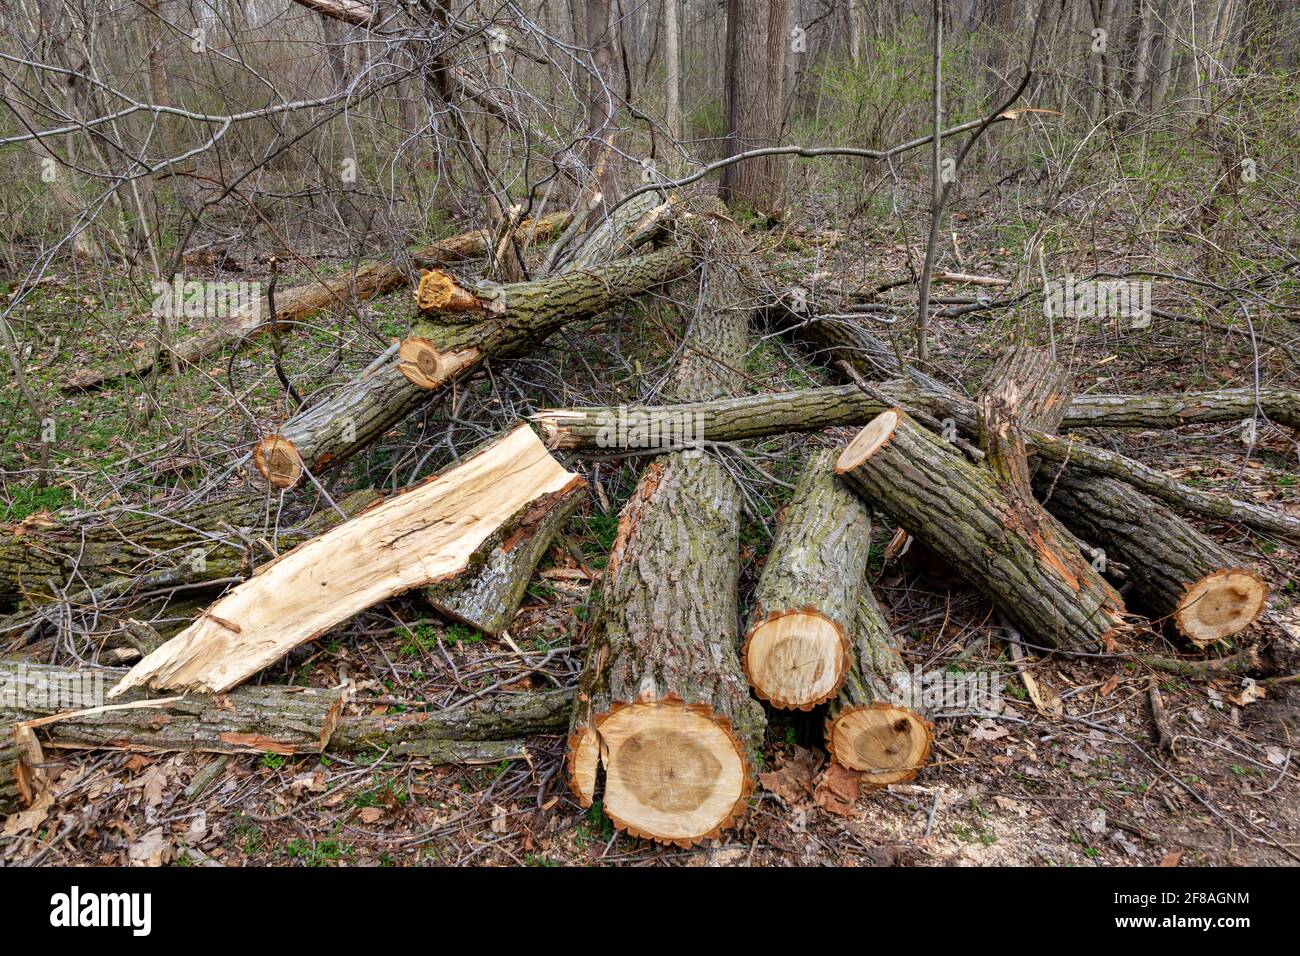 Un arbre a été coupé en rondins dans la forêt du parc du comté de Metea dans le comté d'Allen, Indiana, États-Unis. Banque D'Images